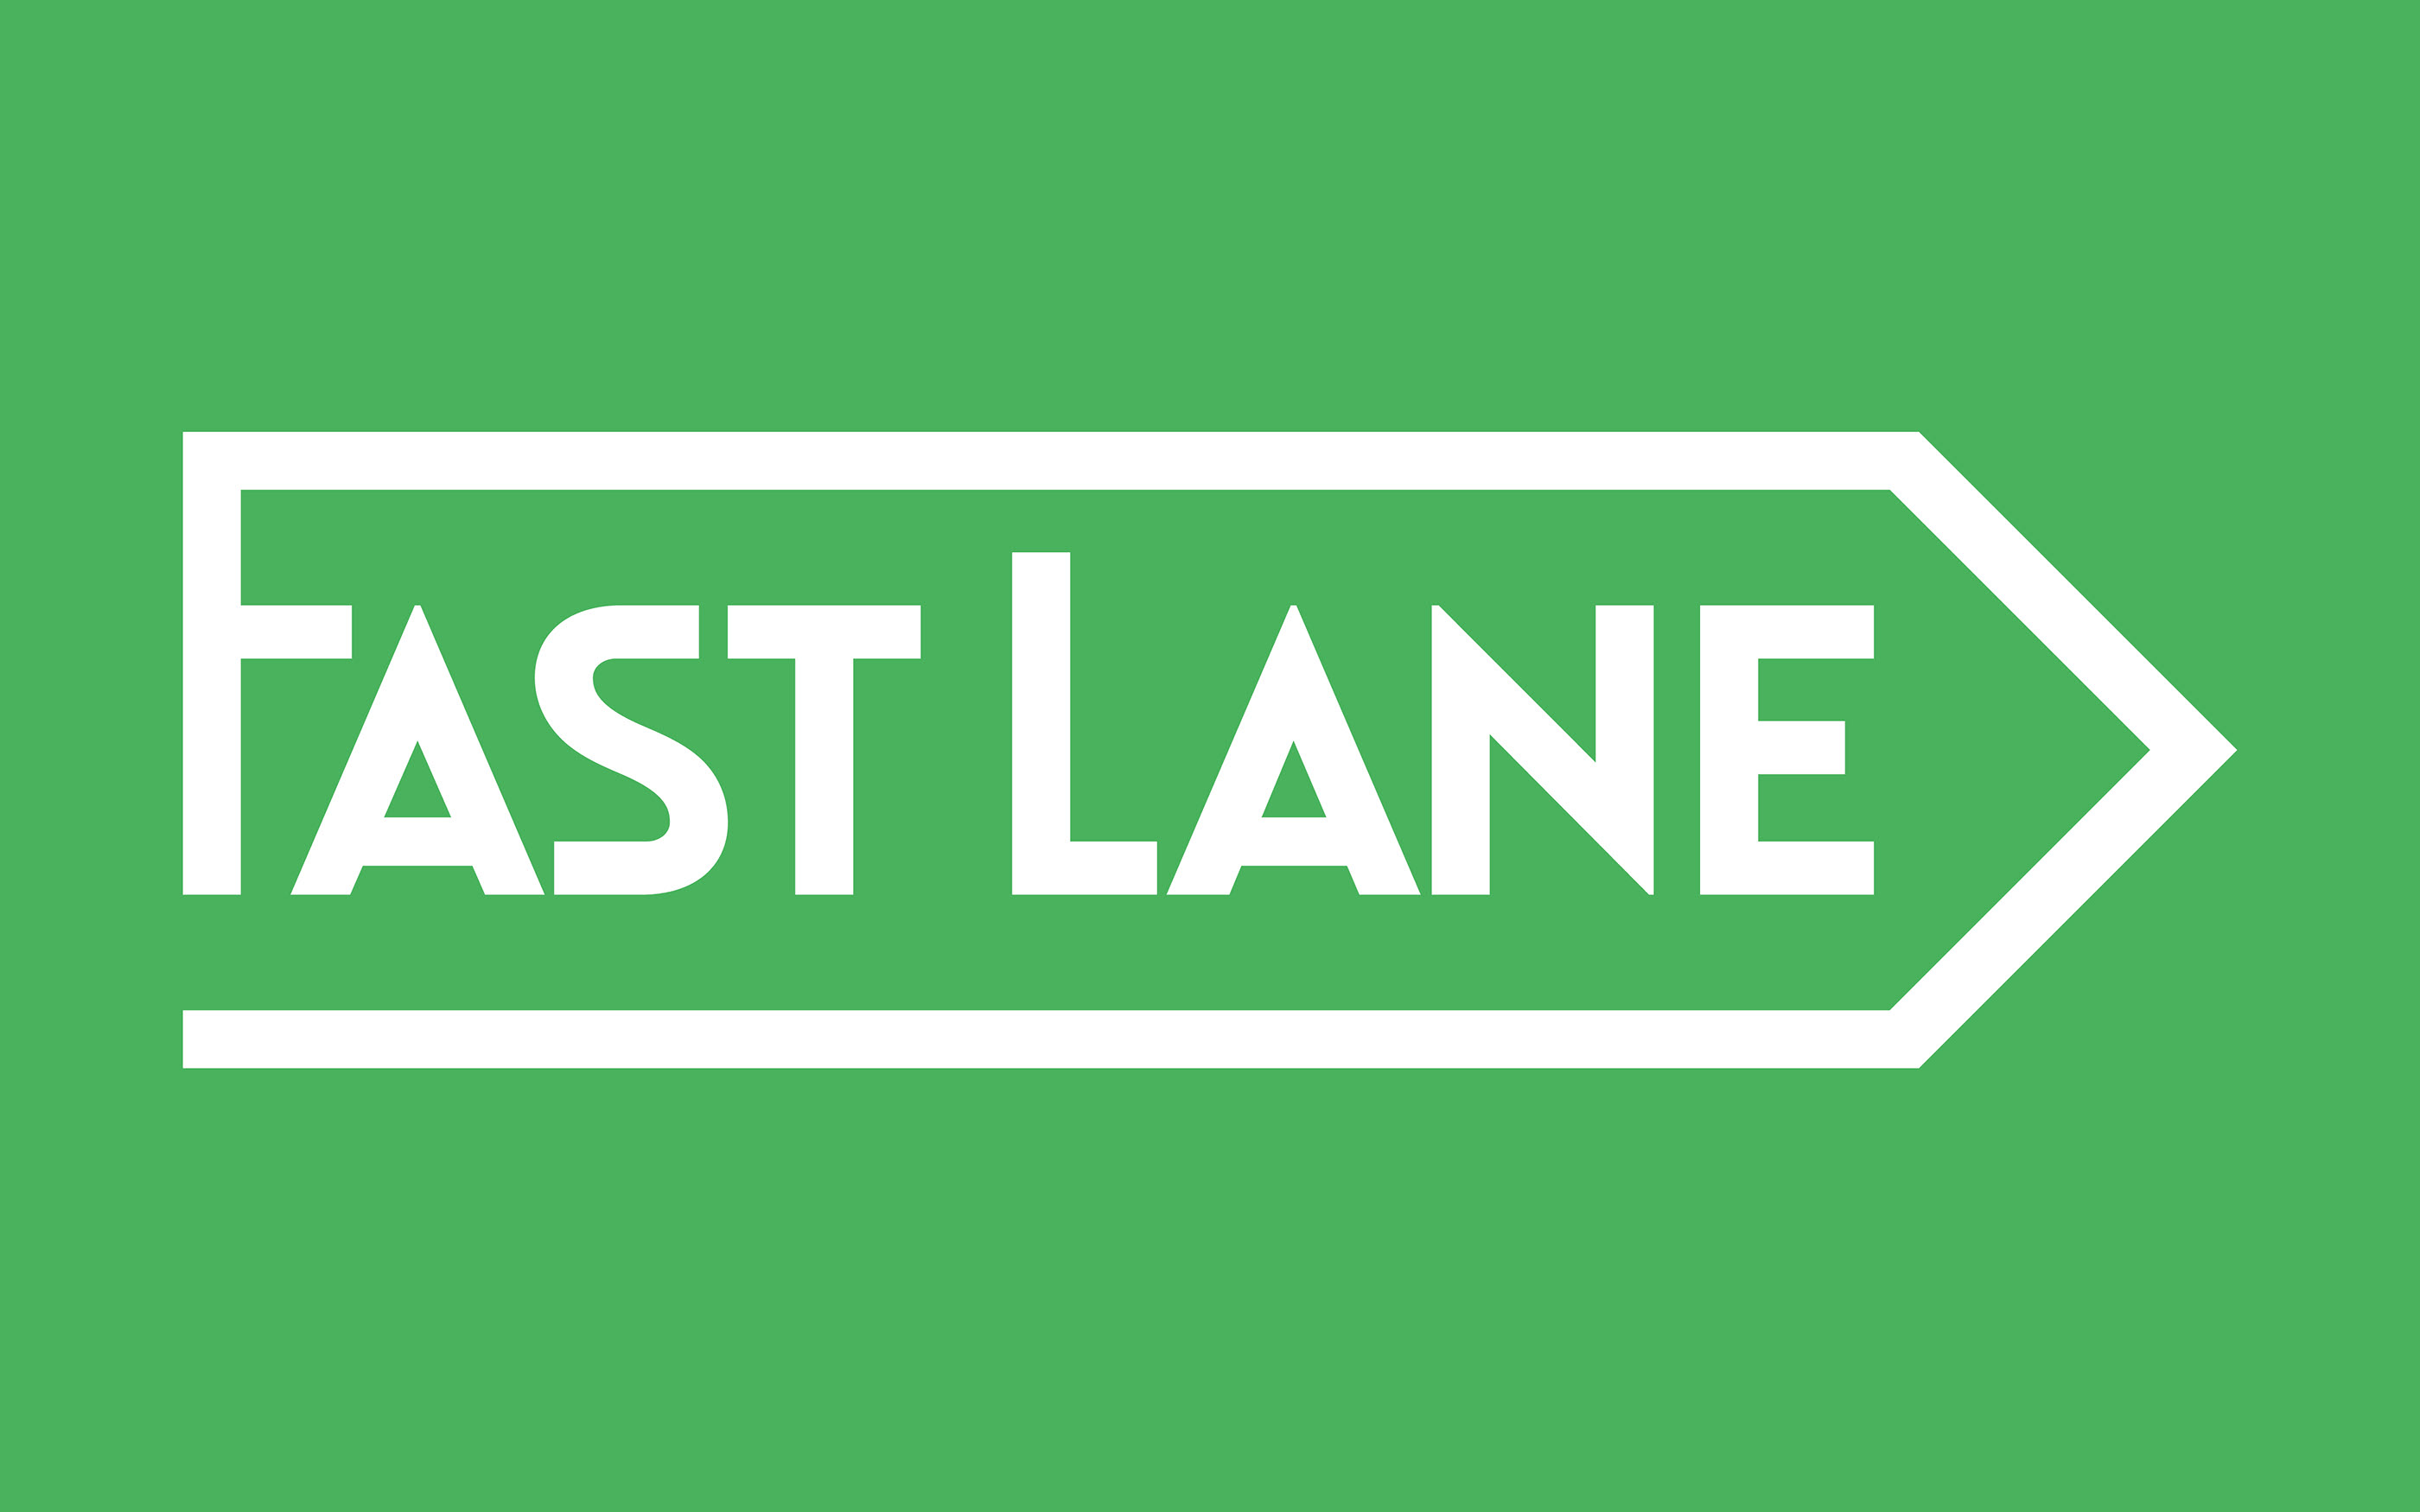 Fast Lane. Fast Lane Hoops. Fast Lane sign. Fast lane 2